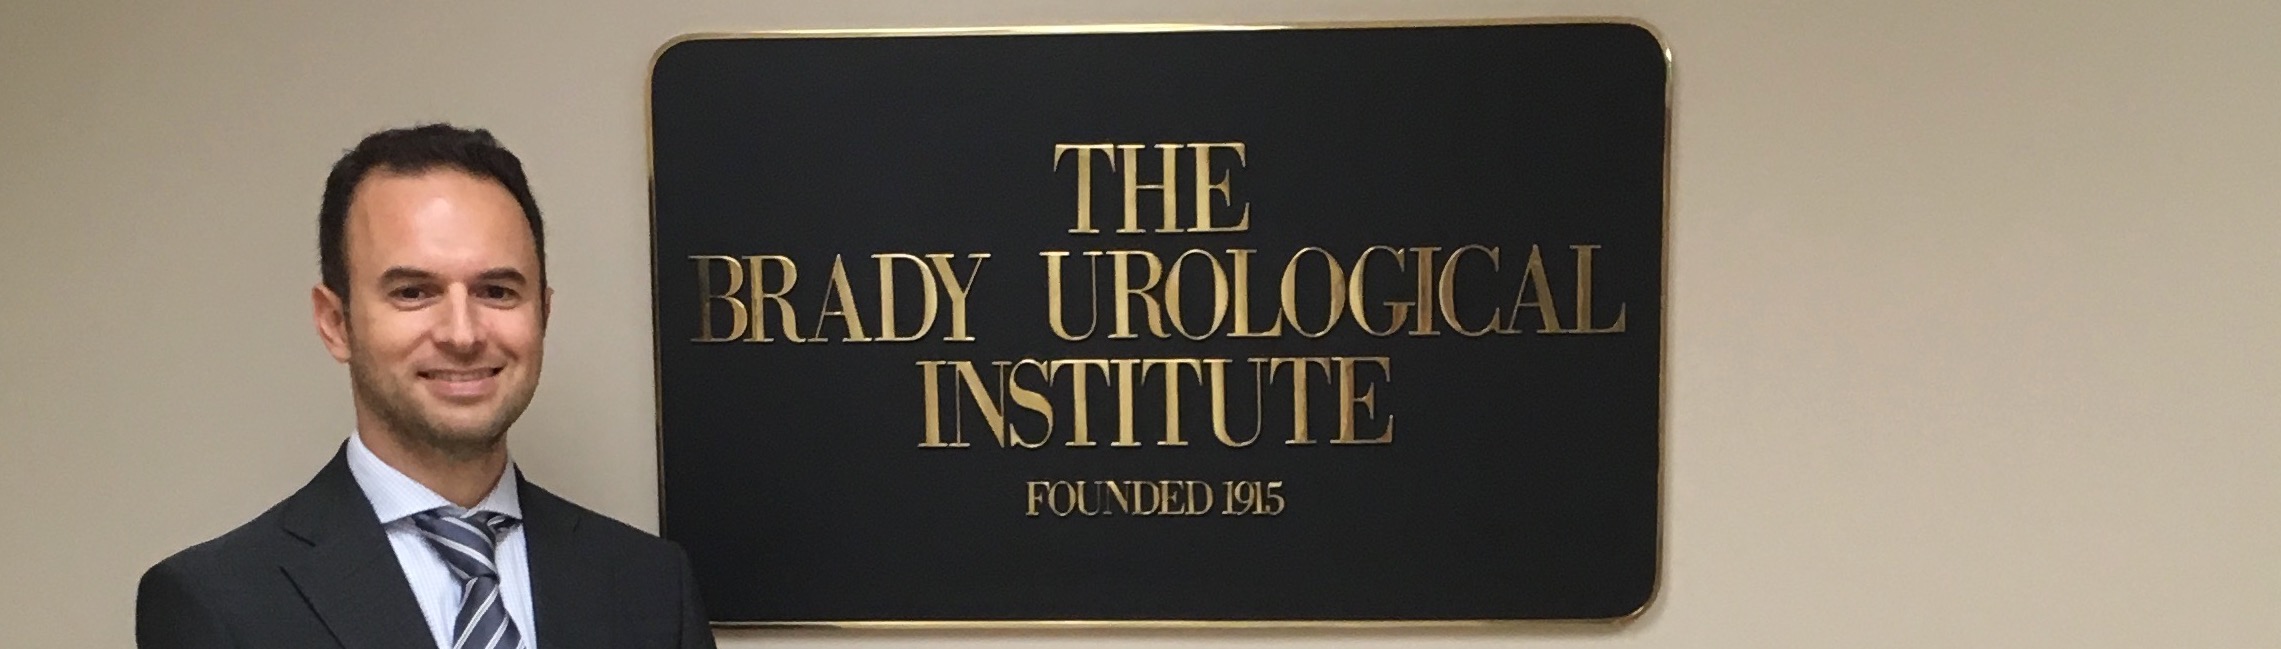 Brady Urological Institute